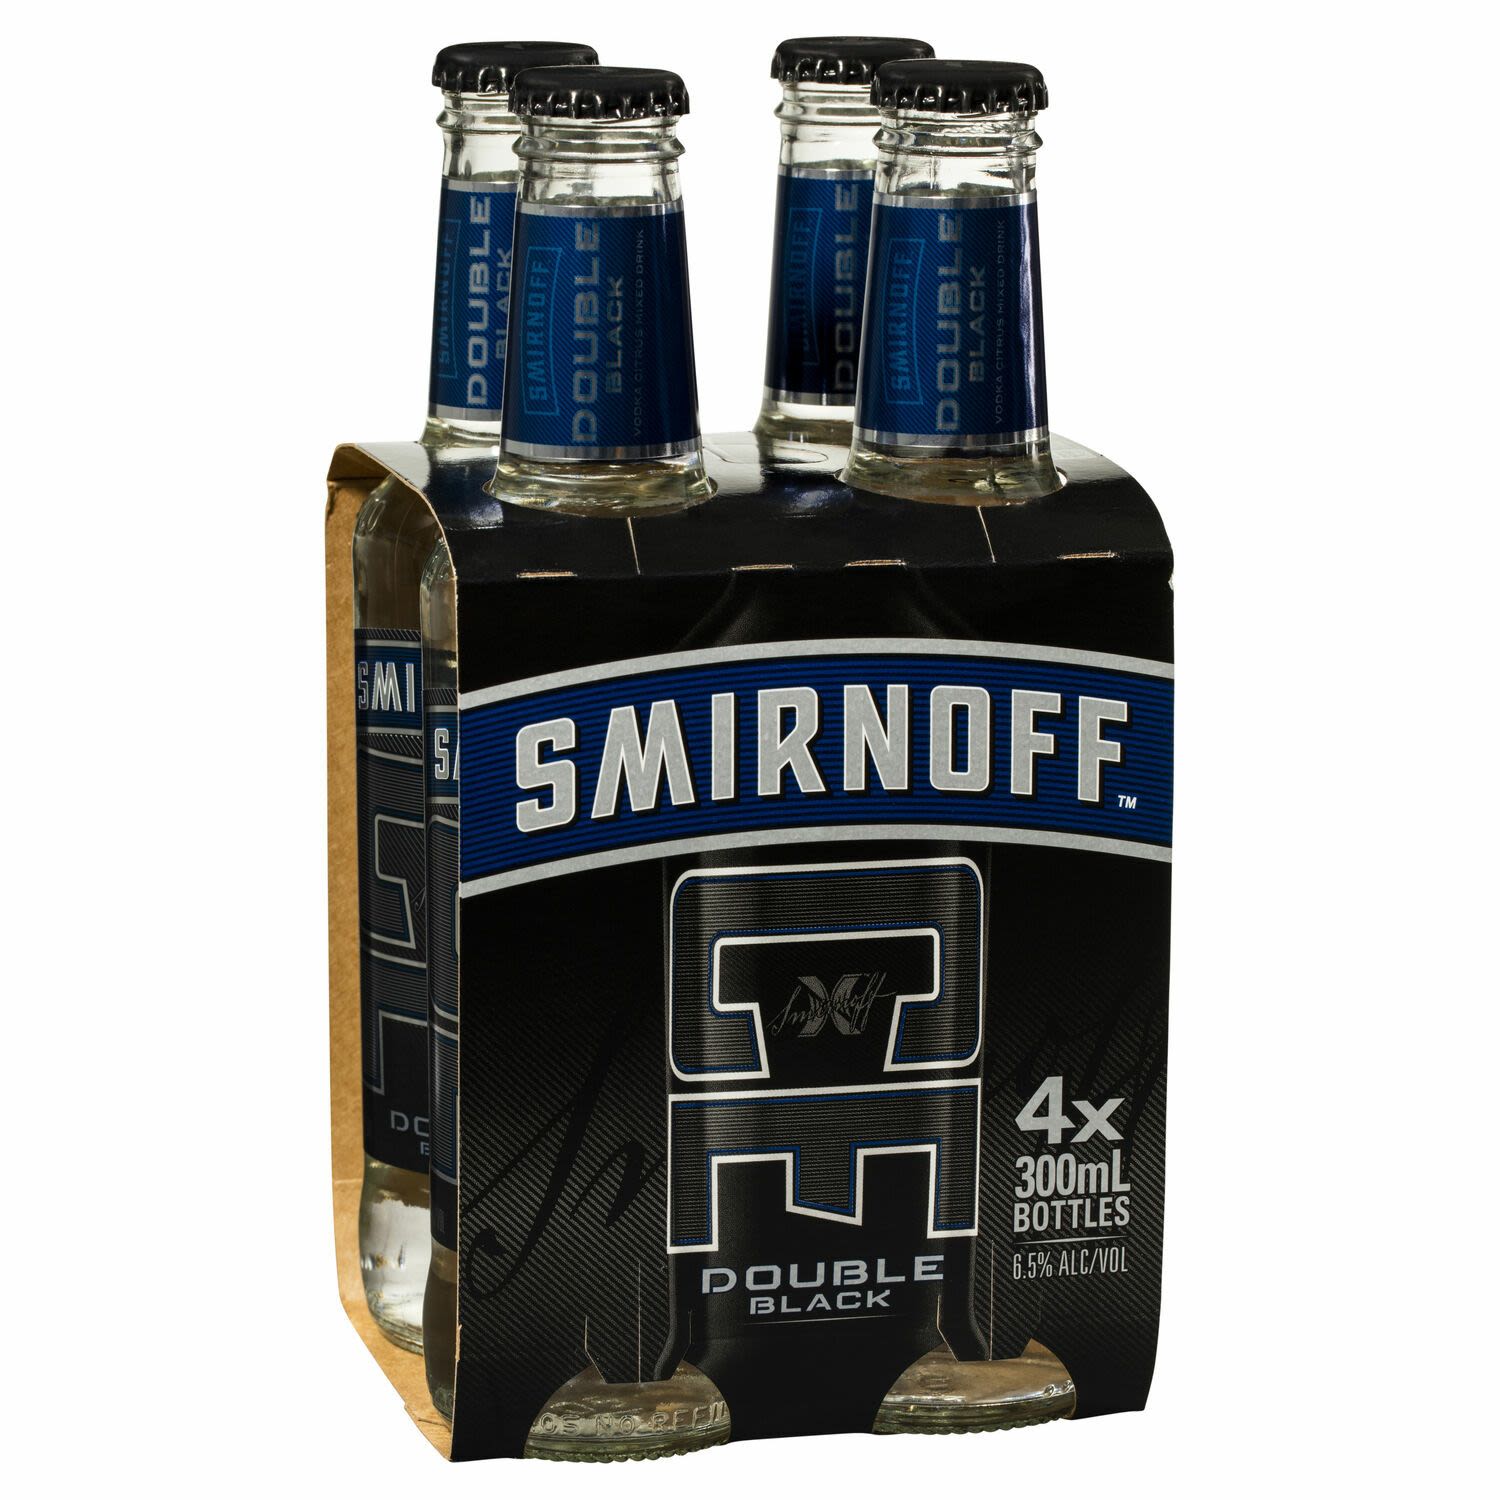 Smirnoff Ice Double Black Bottles 300mL<br /> <br />Alcohol Volume: 6.50%<br /><br />Pack Format: 4 Pack<br /><br />Standard Drinks: 1.5<br /><br />Pack Type: Bottle<br />